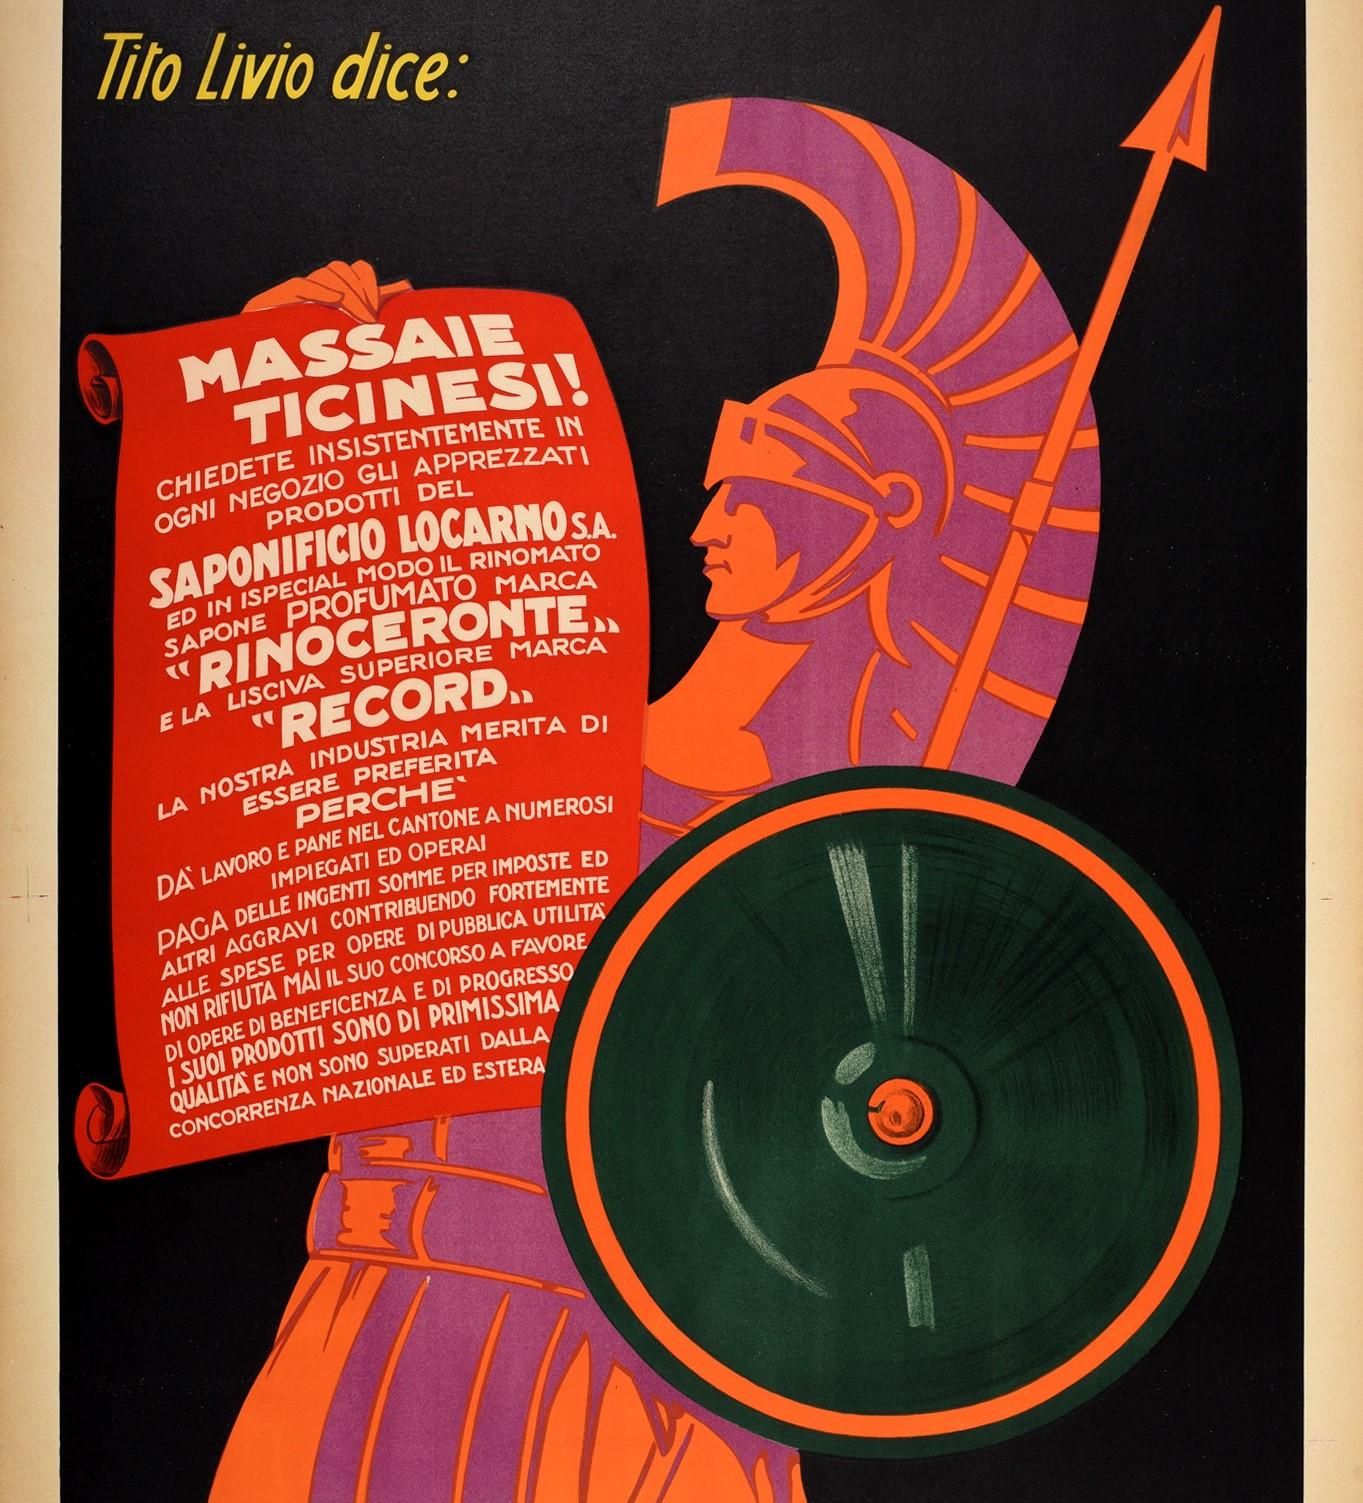 Swiss Original Vintage Advertising Poster For Saponificio Locarno Roman Warrior Design For Sale